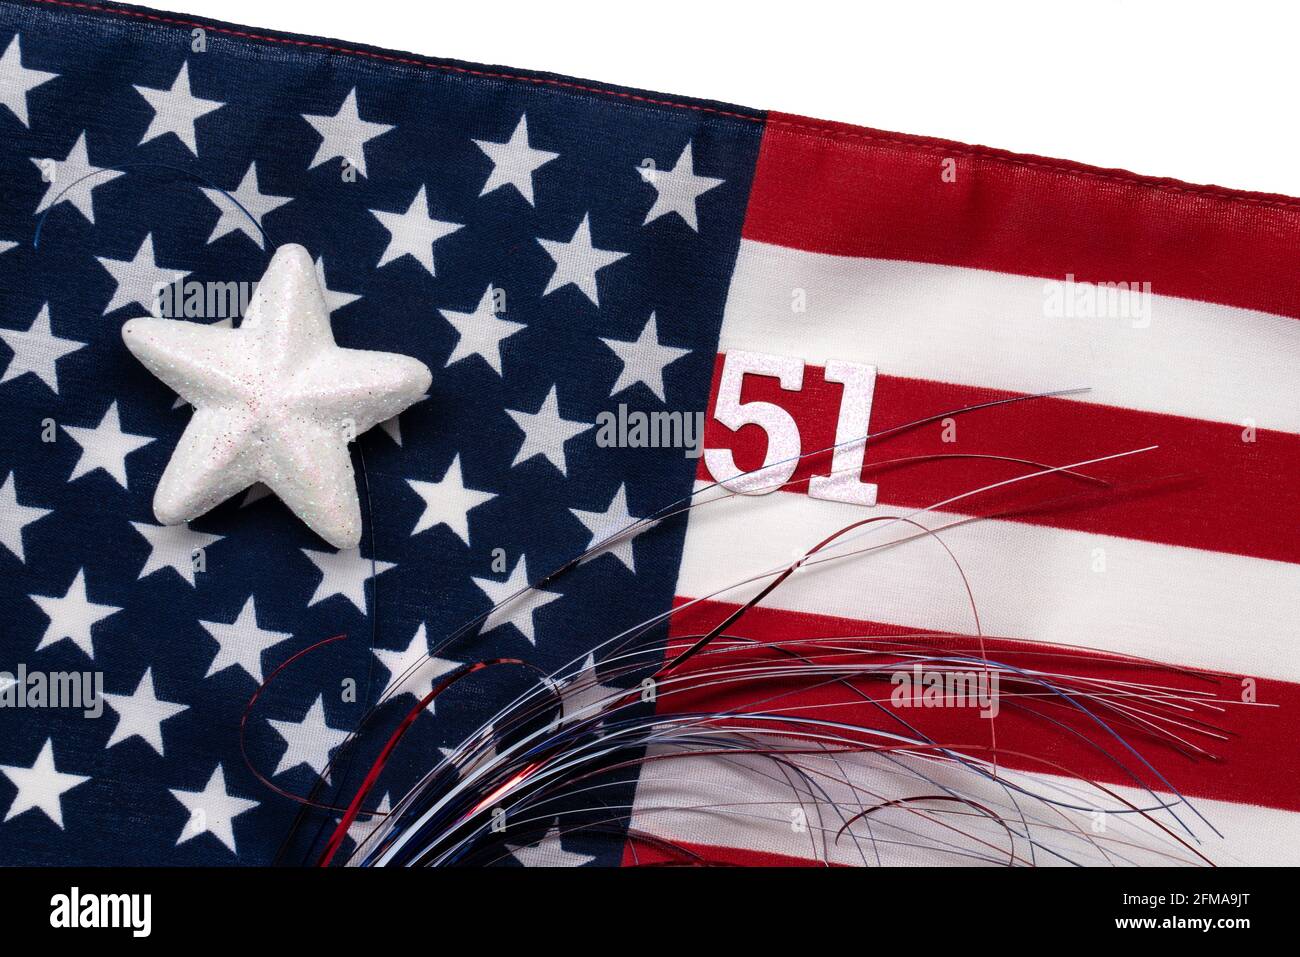 Bandiera a 51 stelle immagini e fotografie stock ad alta risoluzione - Alamy